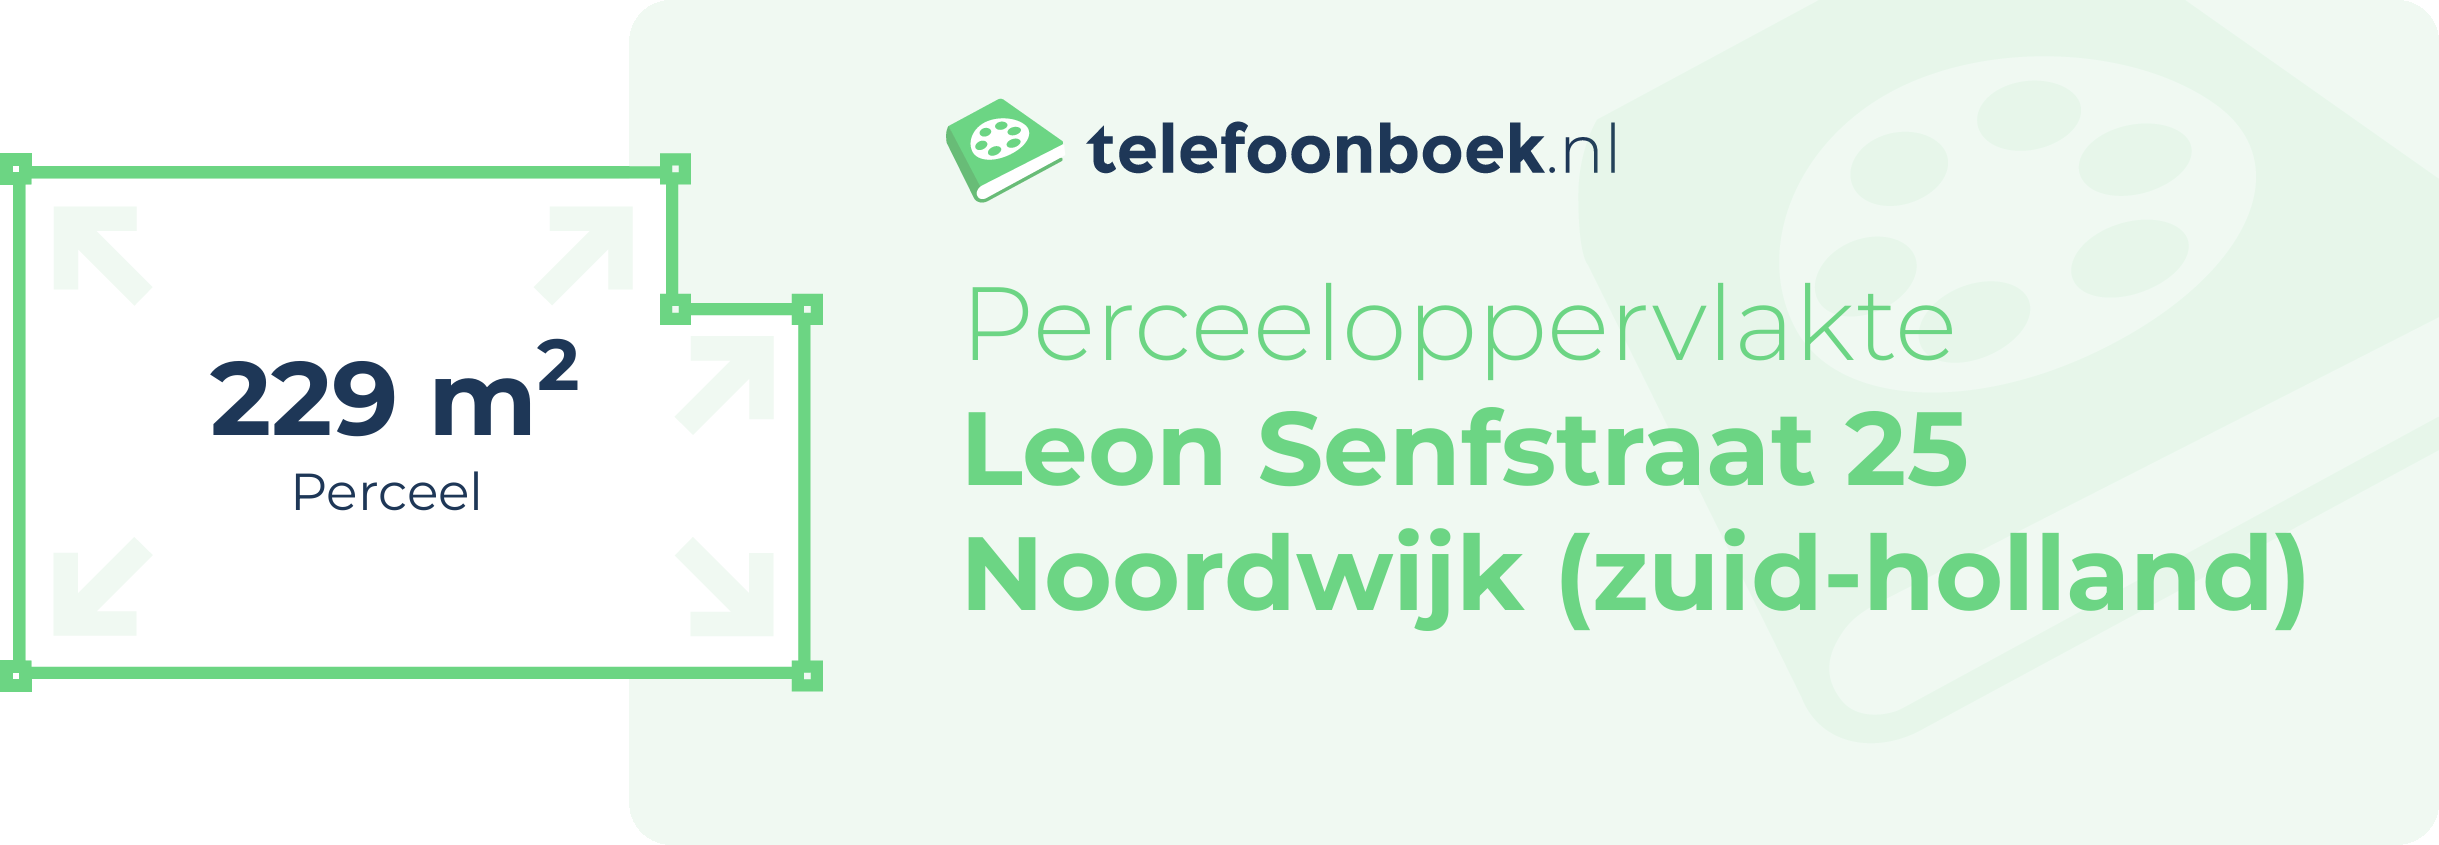 Perceeloppervlakte Leon Senfstraat 25 Noordwijk (Zuid-Holland)